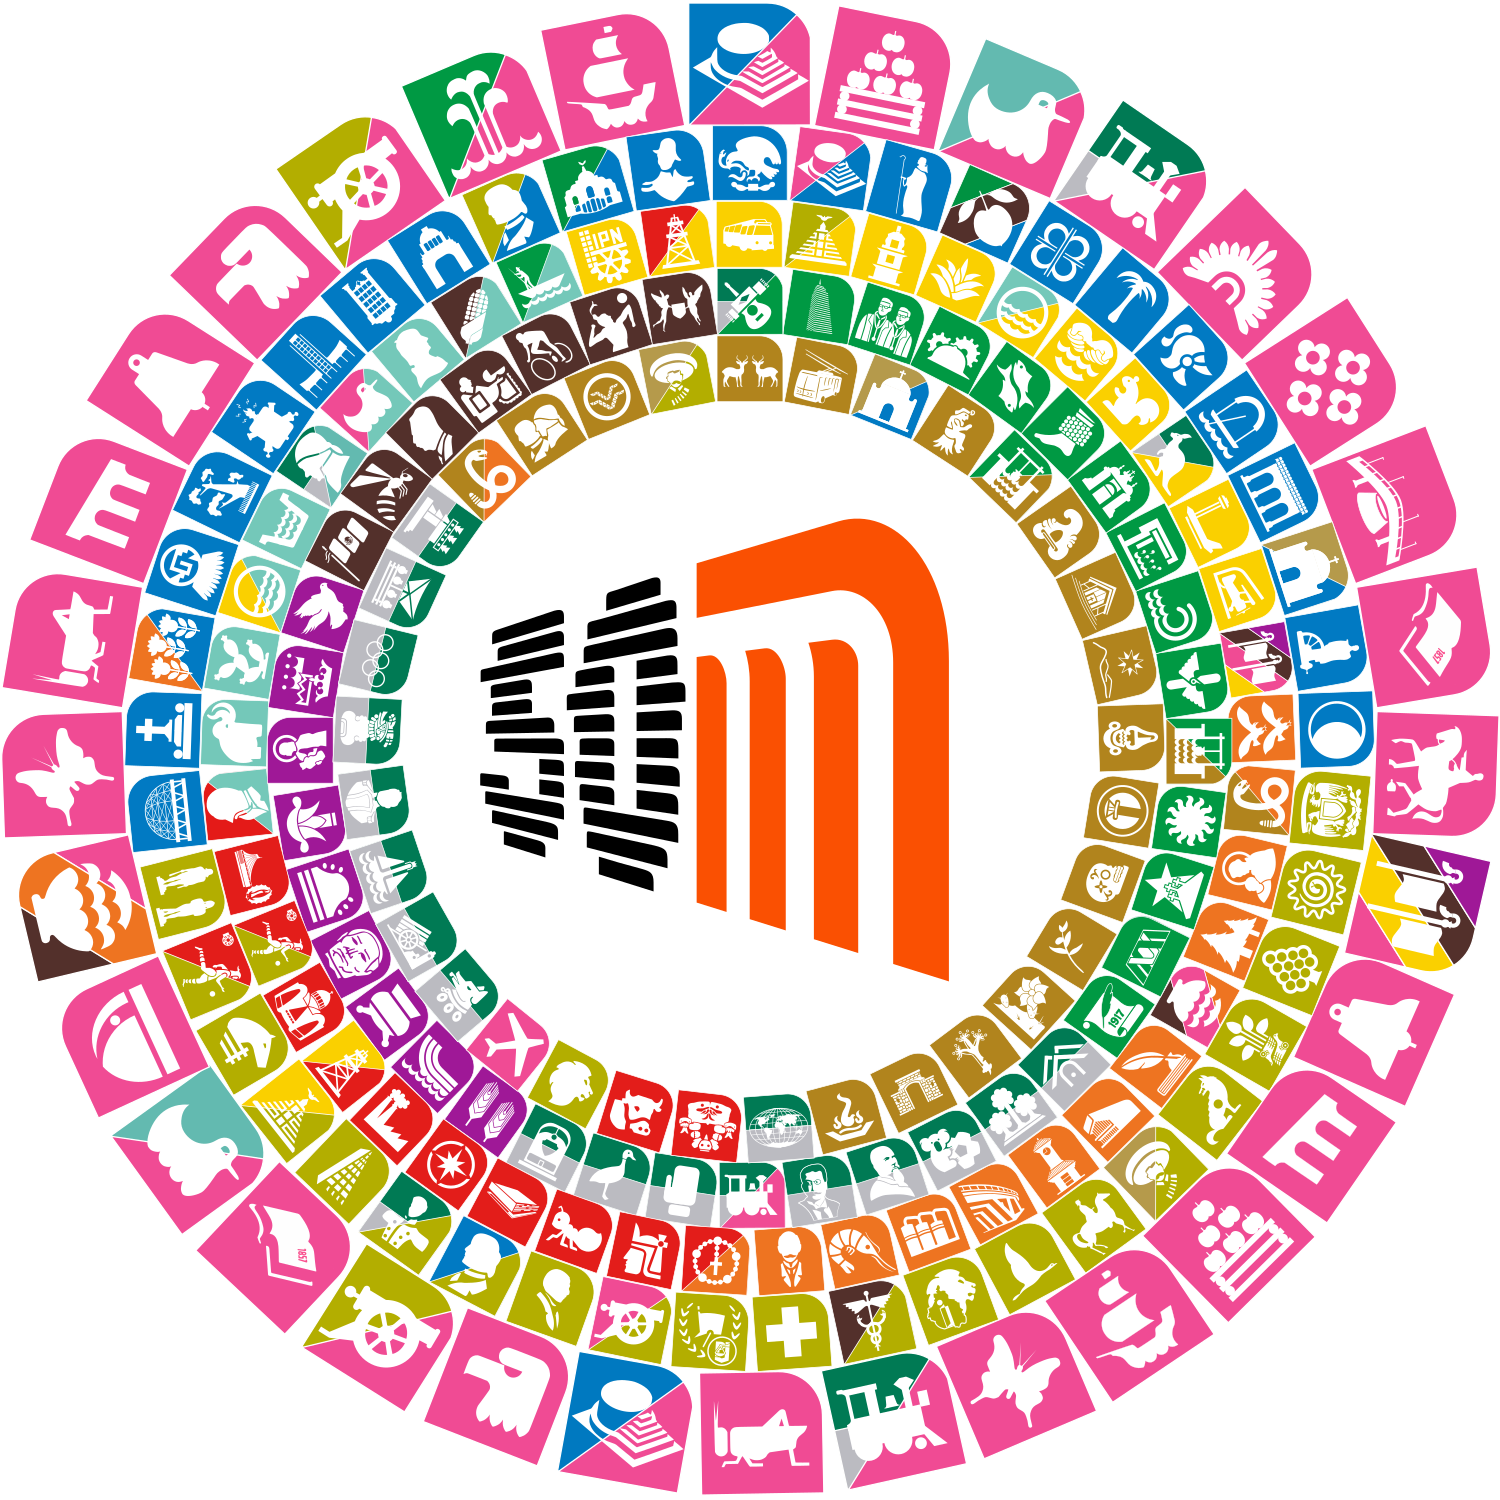 Metro CDMX 50 aniversario by sequebar on DeviantArt